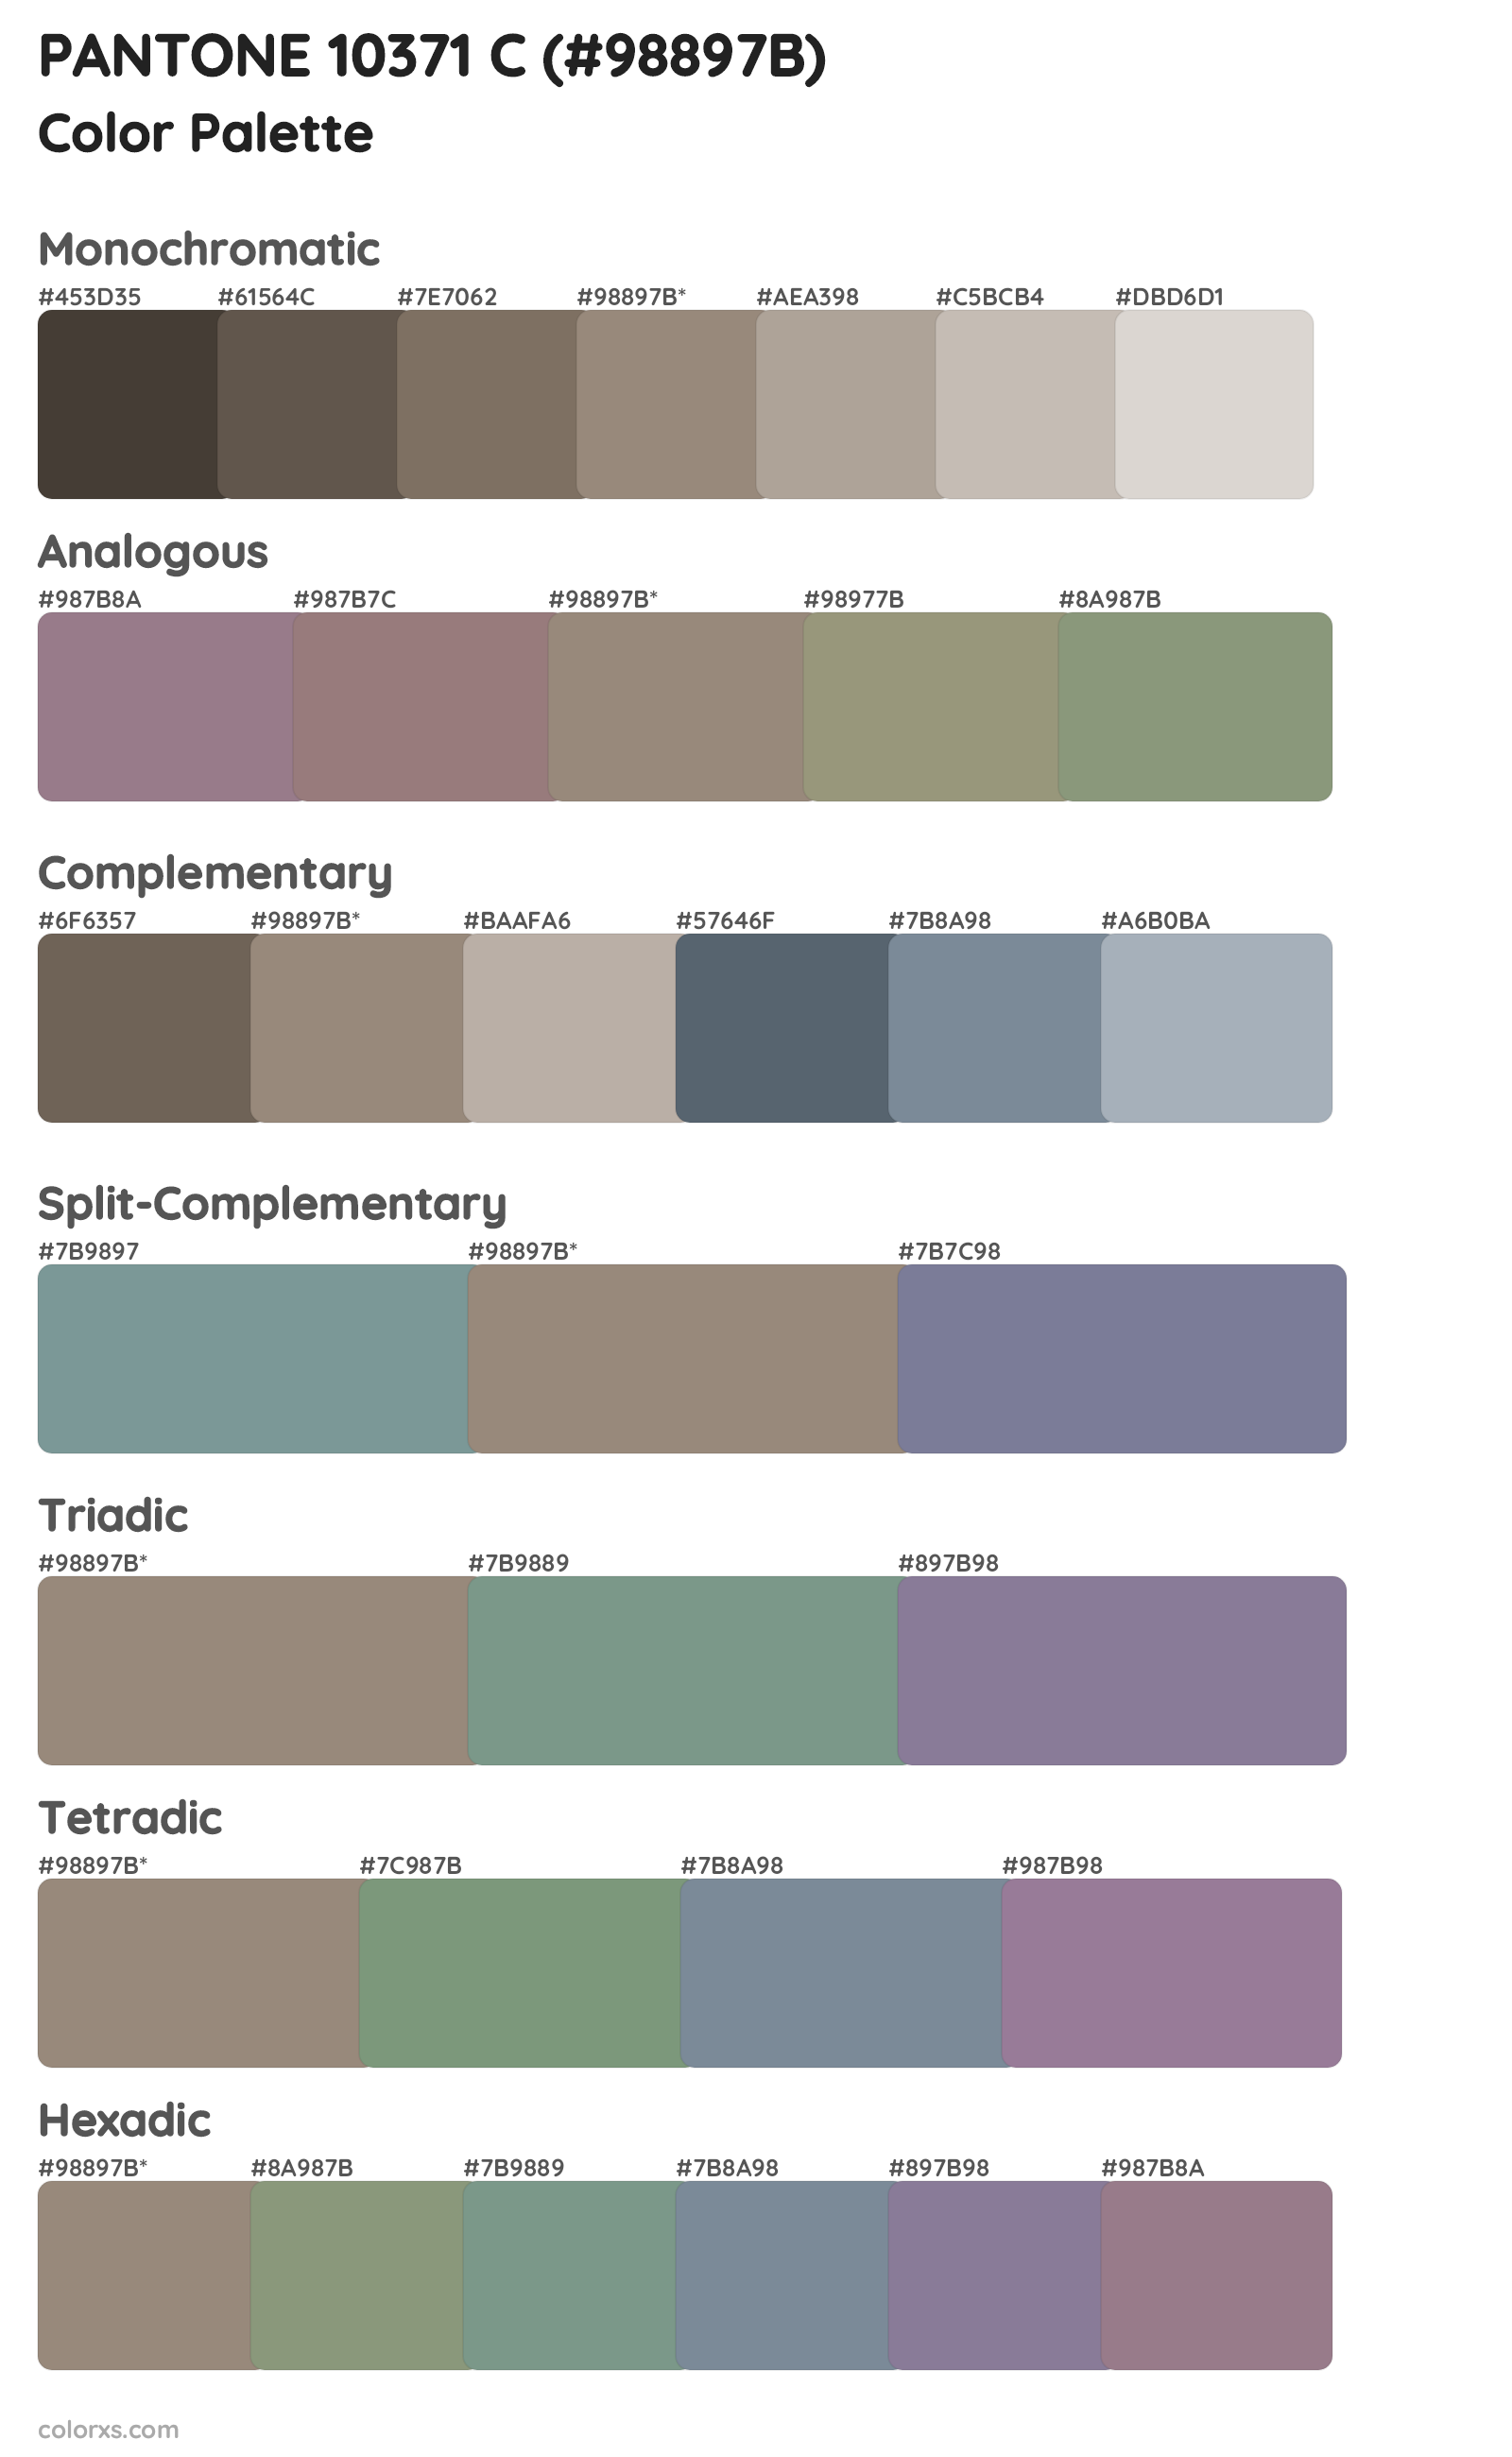 PANTONE 10371 C Color Scheme Palettes